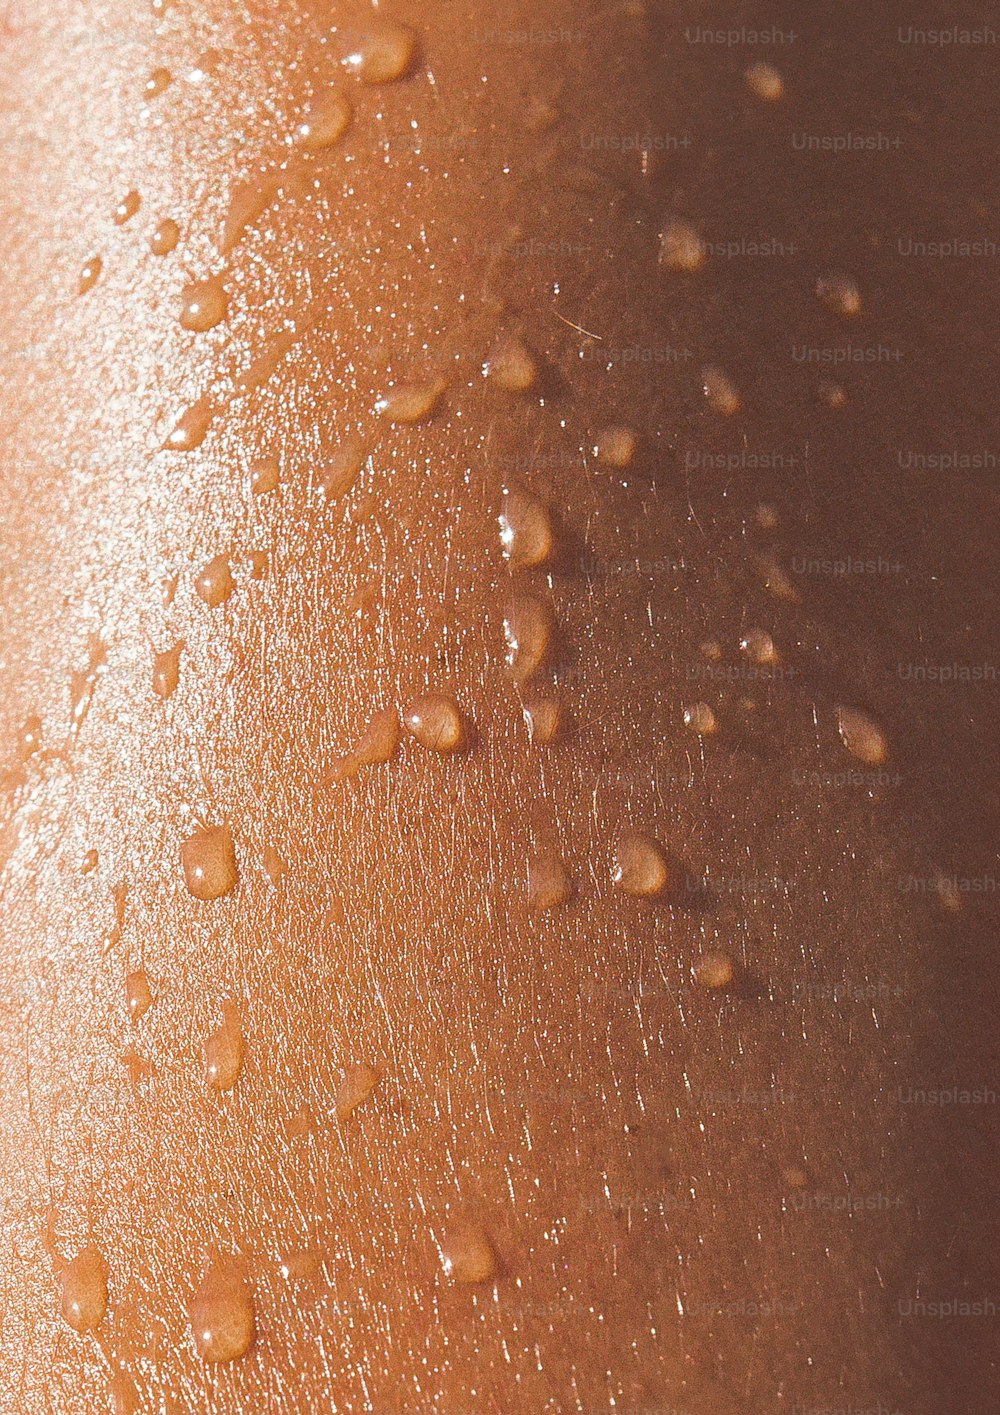 um close up do bumbum de uma pessoa com gotas de água sobre ele